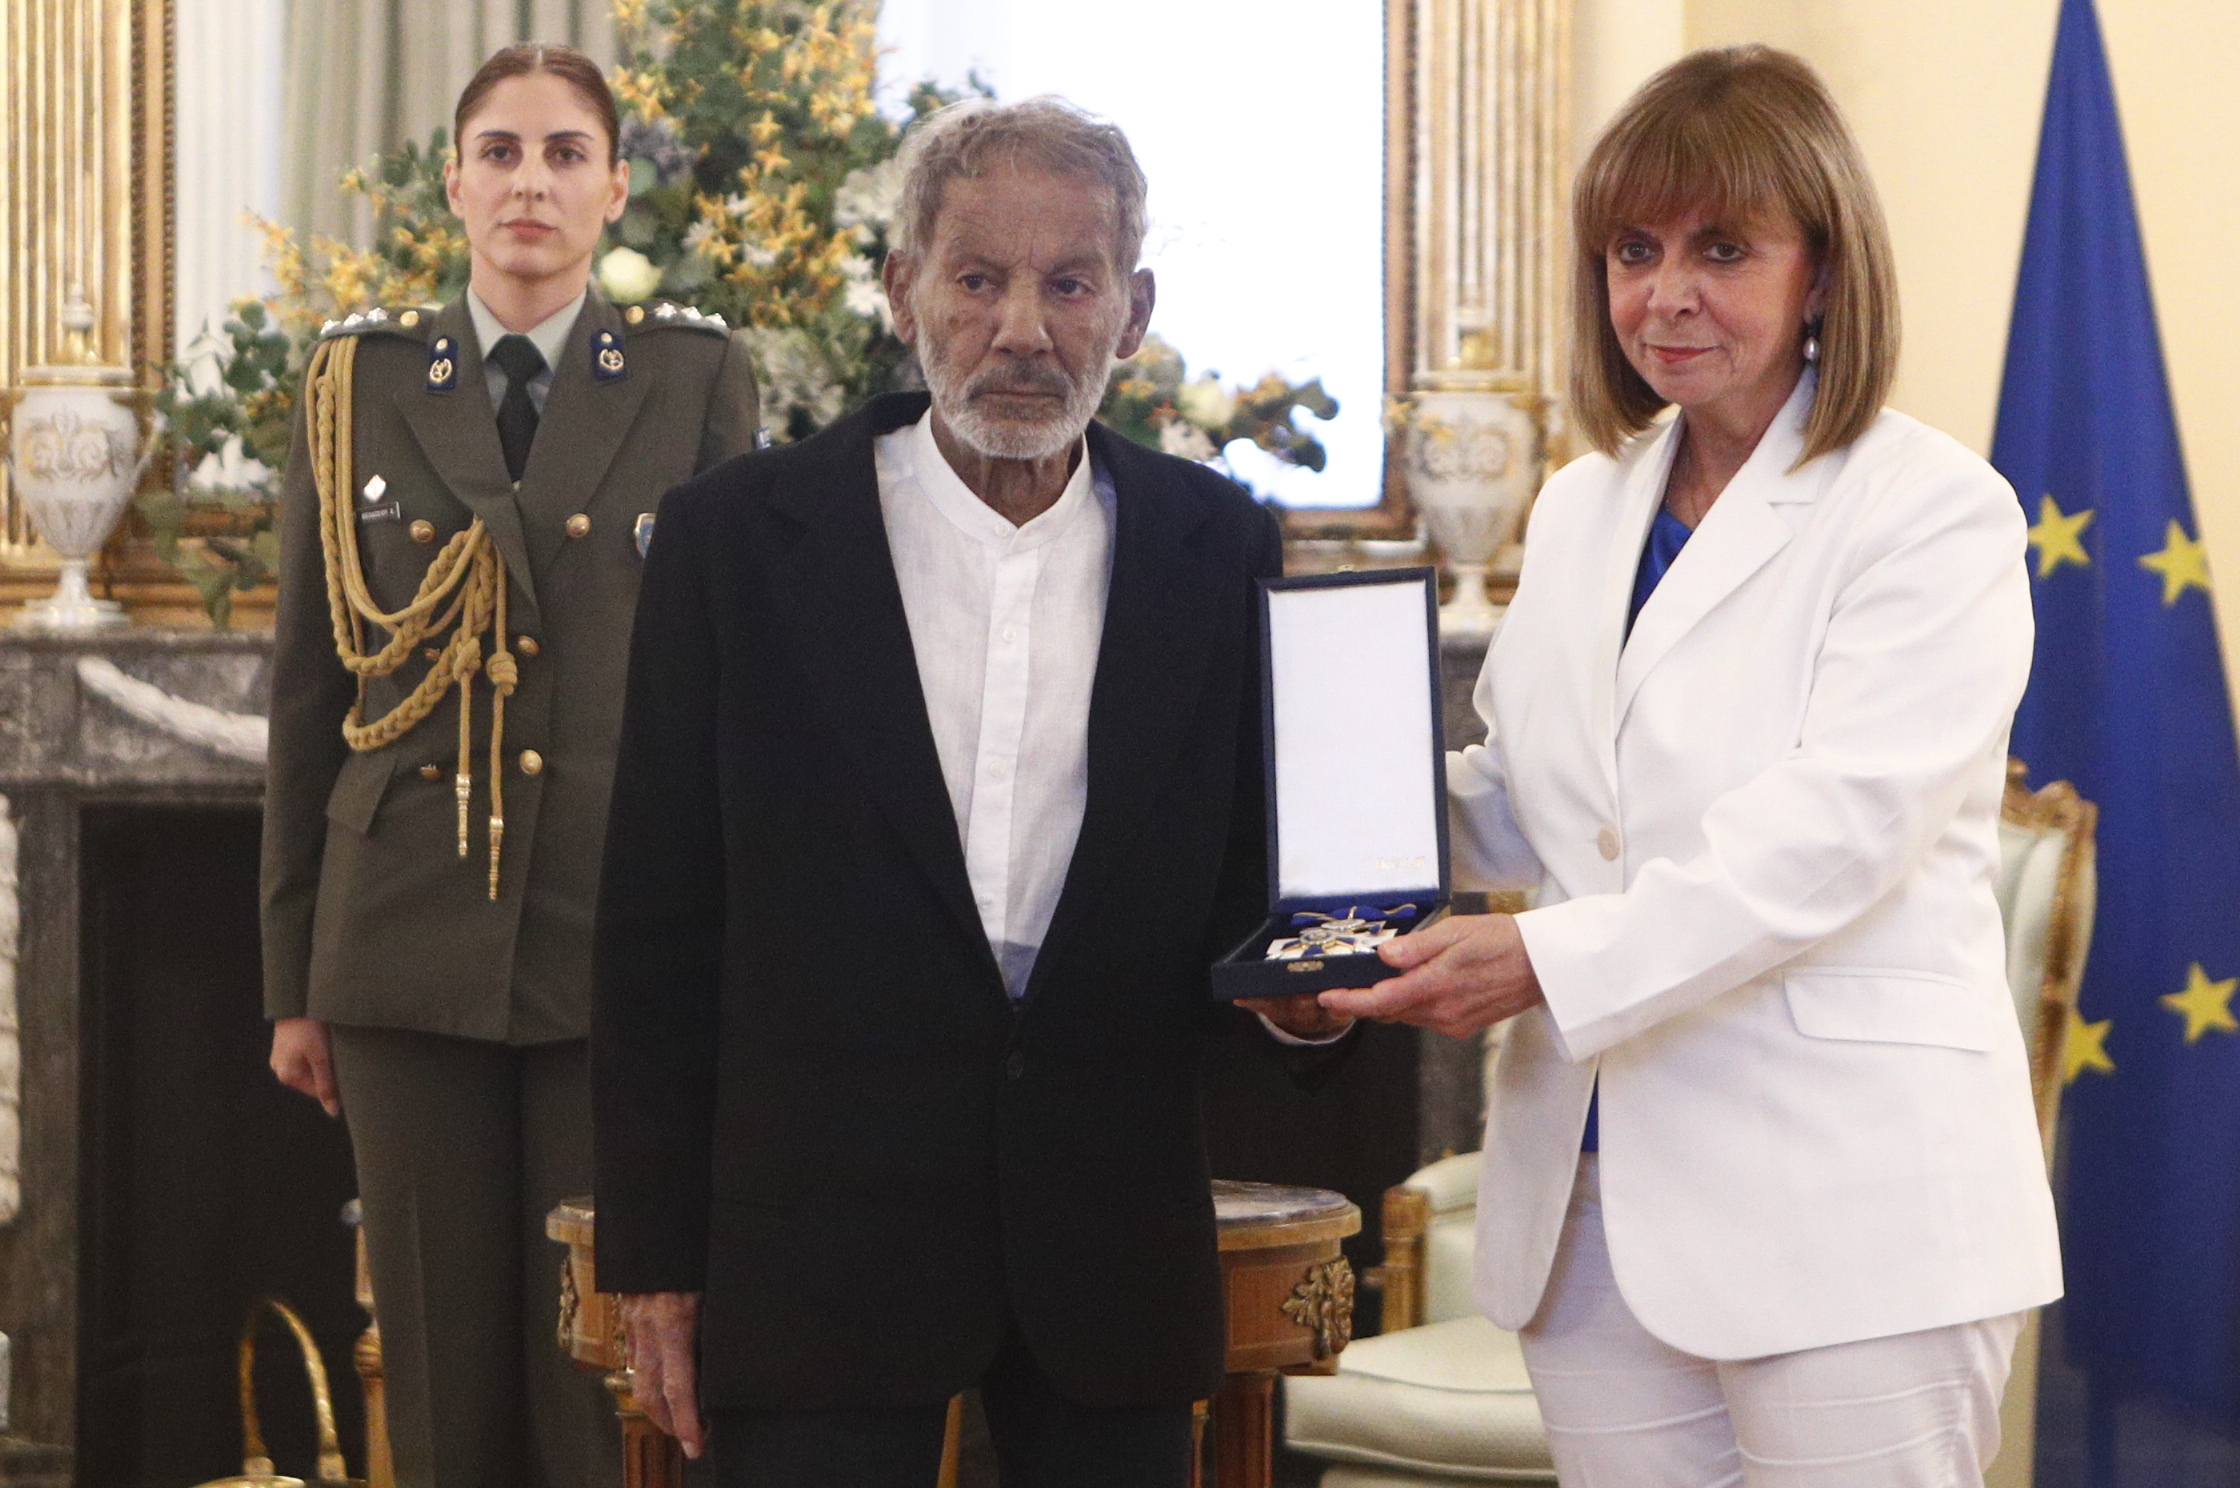 Ο Σταύρος Ξαρχάκος έλαβε το παράσημο του Ανώτερου Ταξιάρχη Τάγματος της Τιμής από την Κατερίνα Σακελλαροπούλου